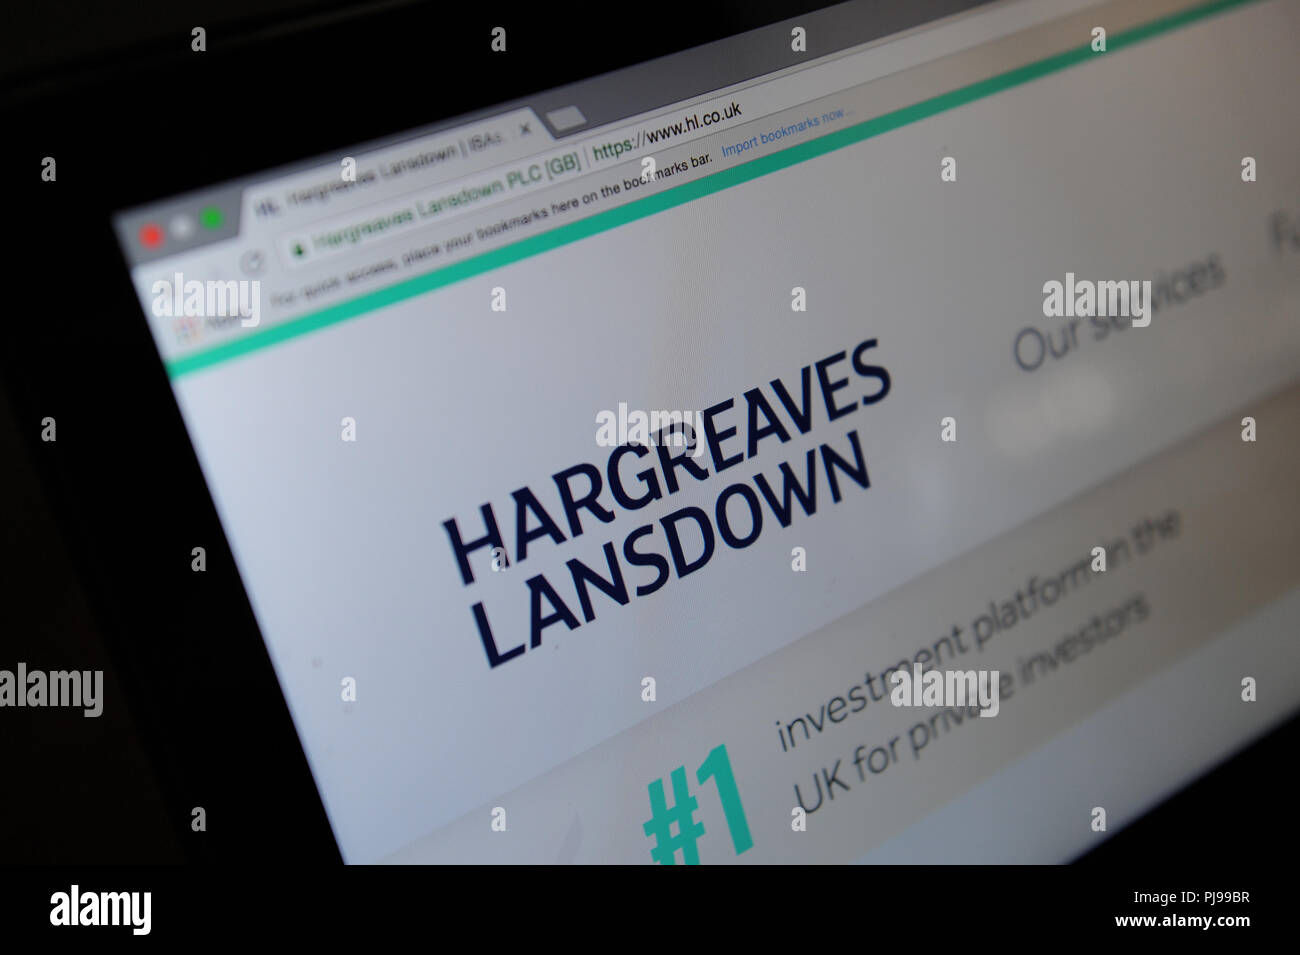 Hargreaves Lansdown vu le site web à travers une loupe Banque D'Images